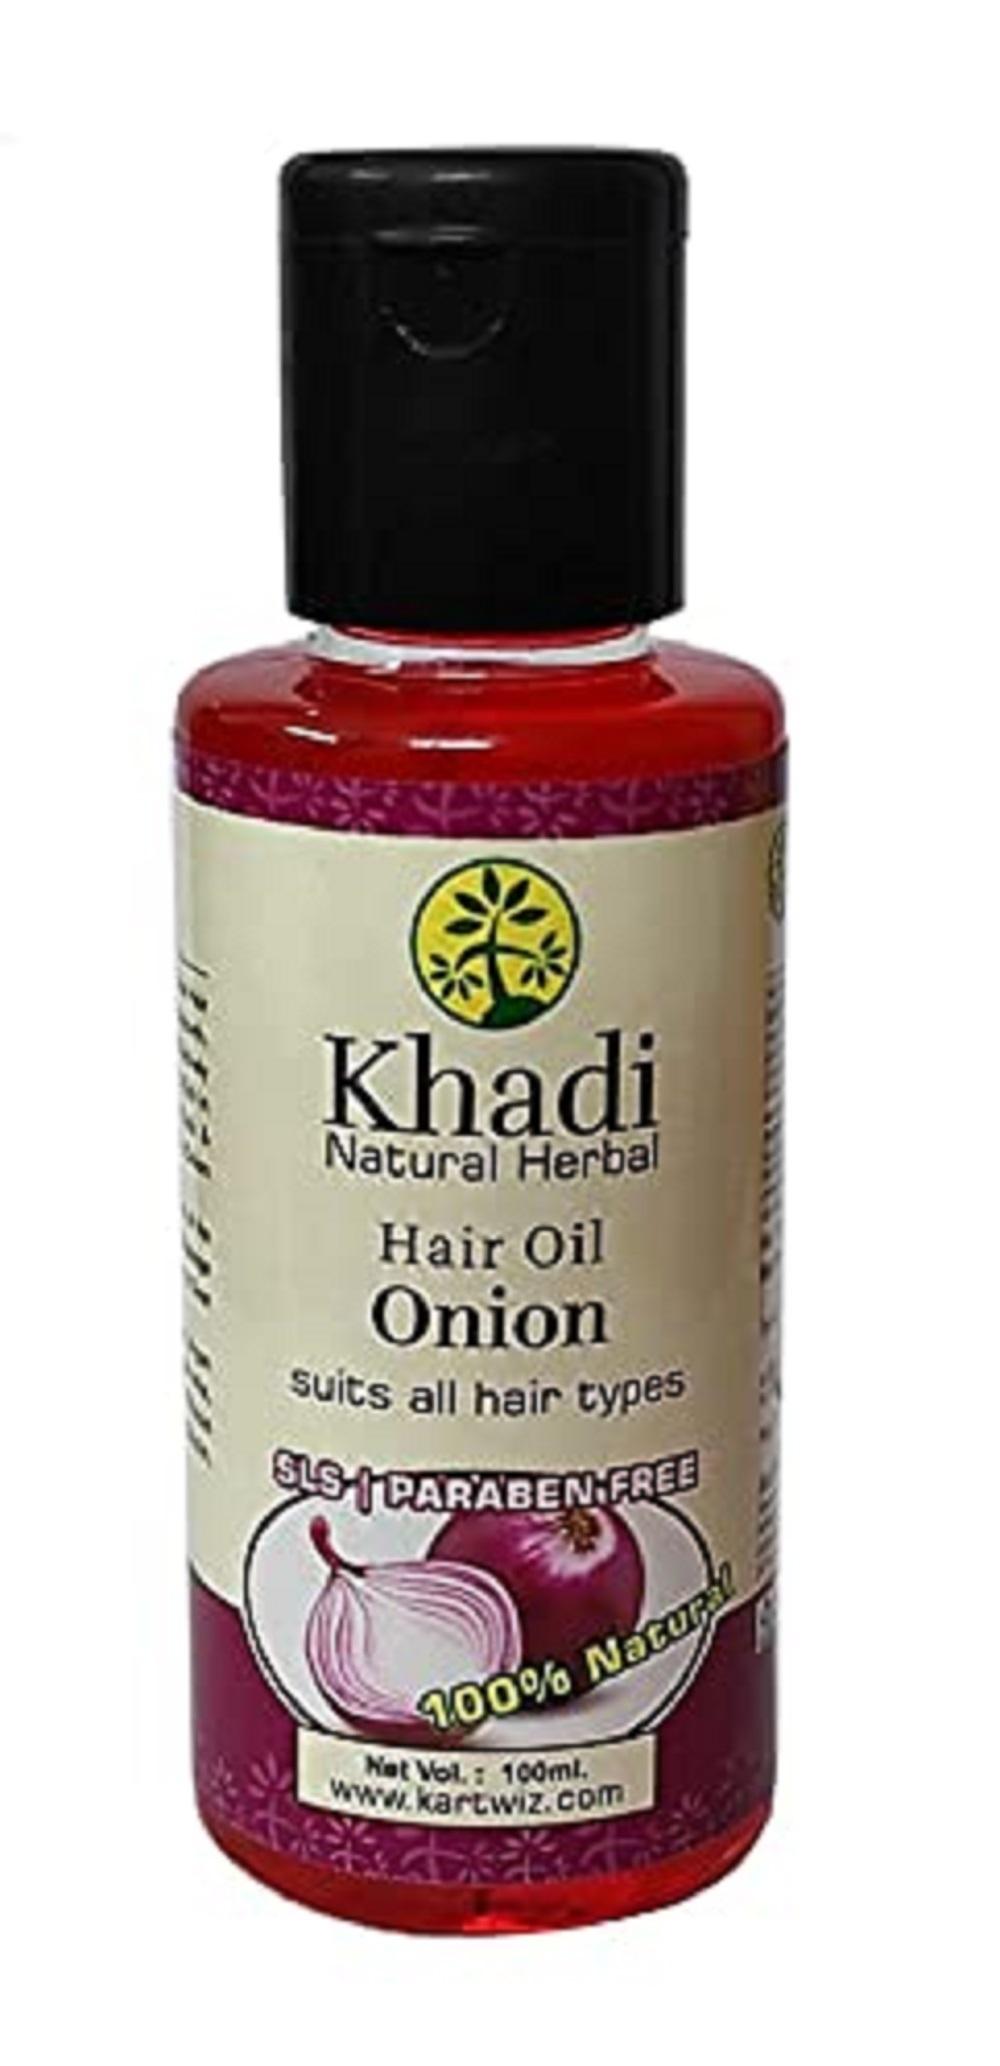 Khadi Natural Herbal Onion Hair Oil For Hair Growth & Hair Fall Control || Fight Dandruff||100ml Pack of 1 - JioMart